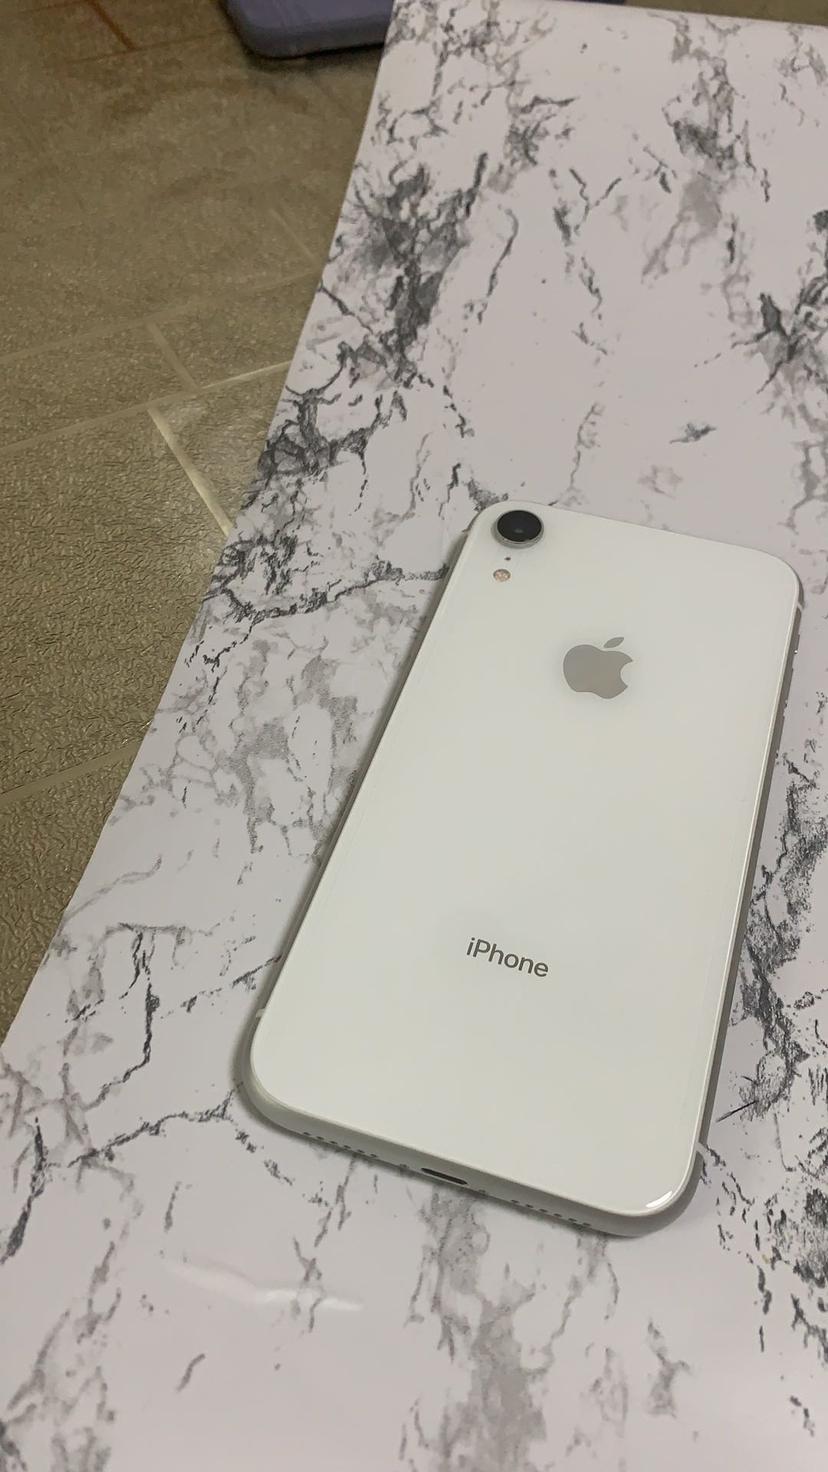 苹果xr iphone xr 电信4g智能手机美版有锁未激活 128gb 白色【裸机】